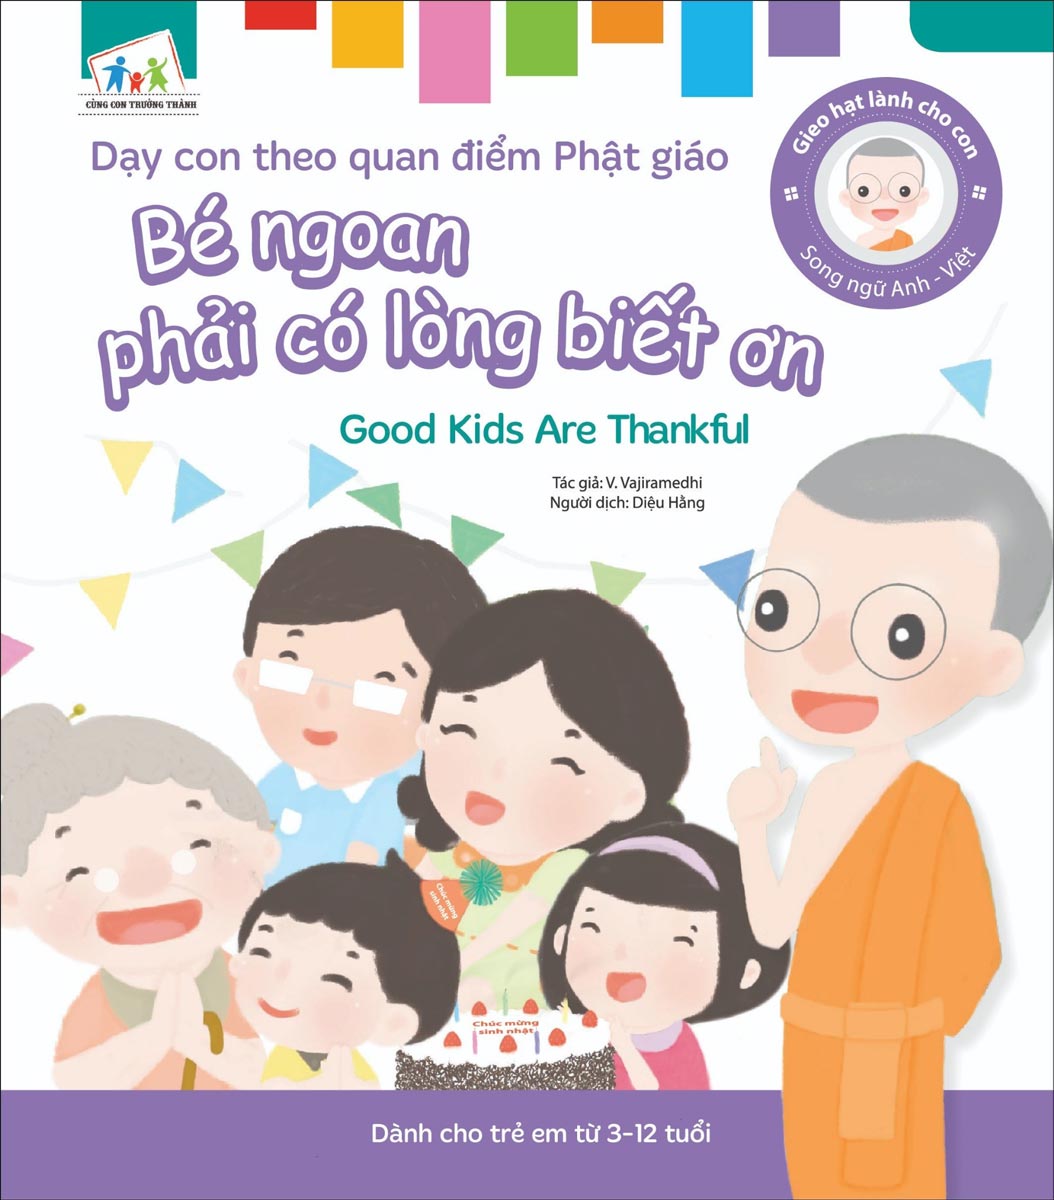 Gieo Hạt Lành Cho Con - Dạy Con Theo Quan Điểm Phật Giáo - Good Kids Are Thankful - Bé Ngoan Phải Có Lòng Biết Ơn 